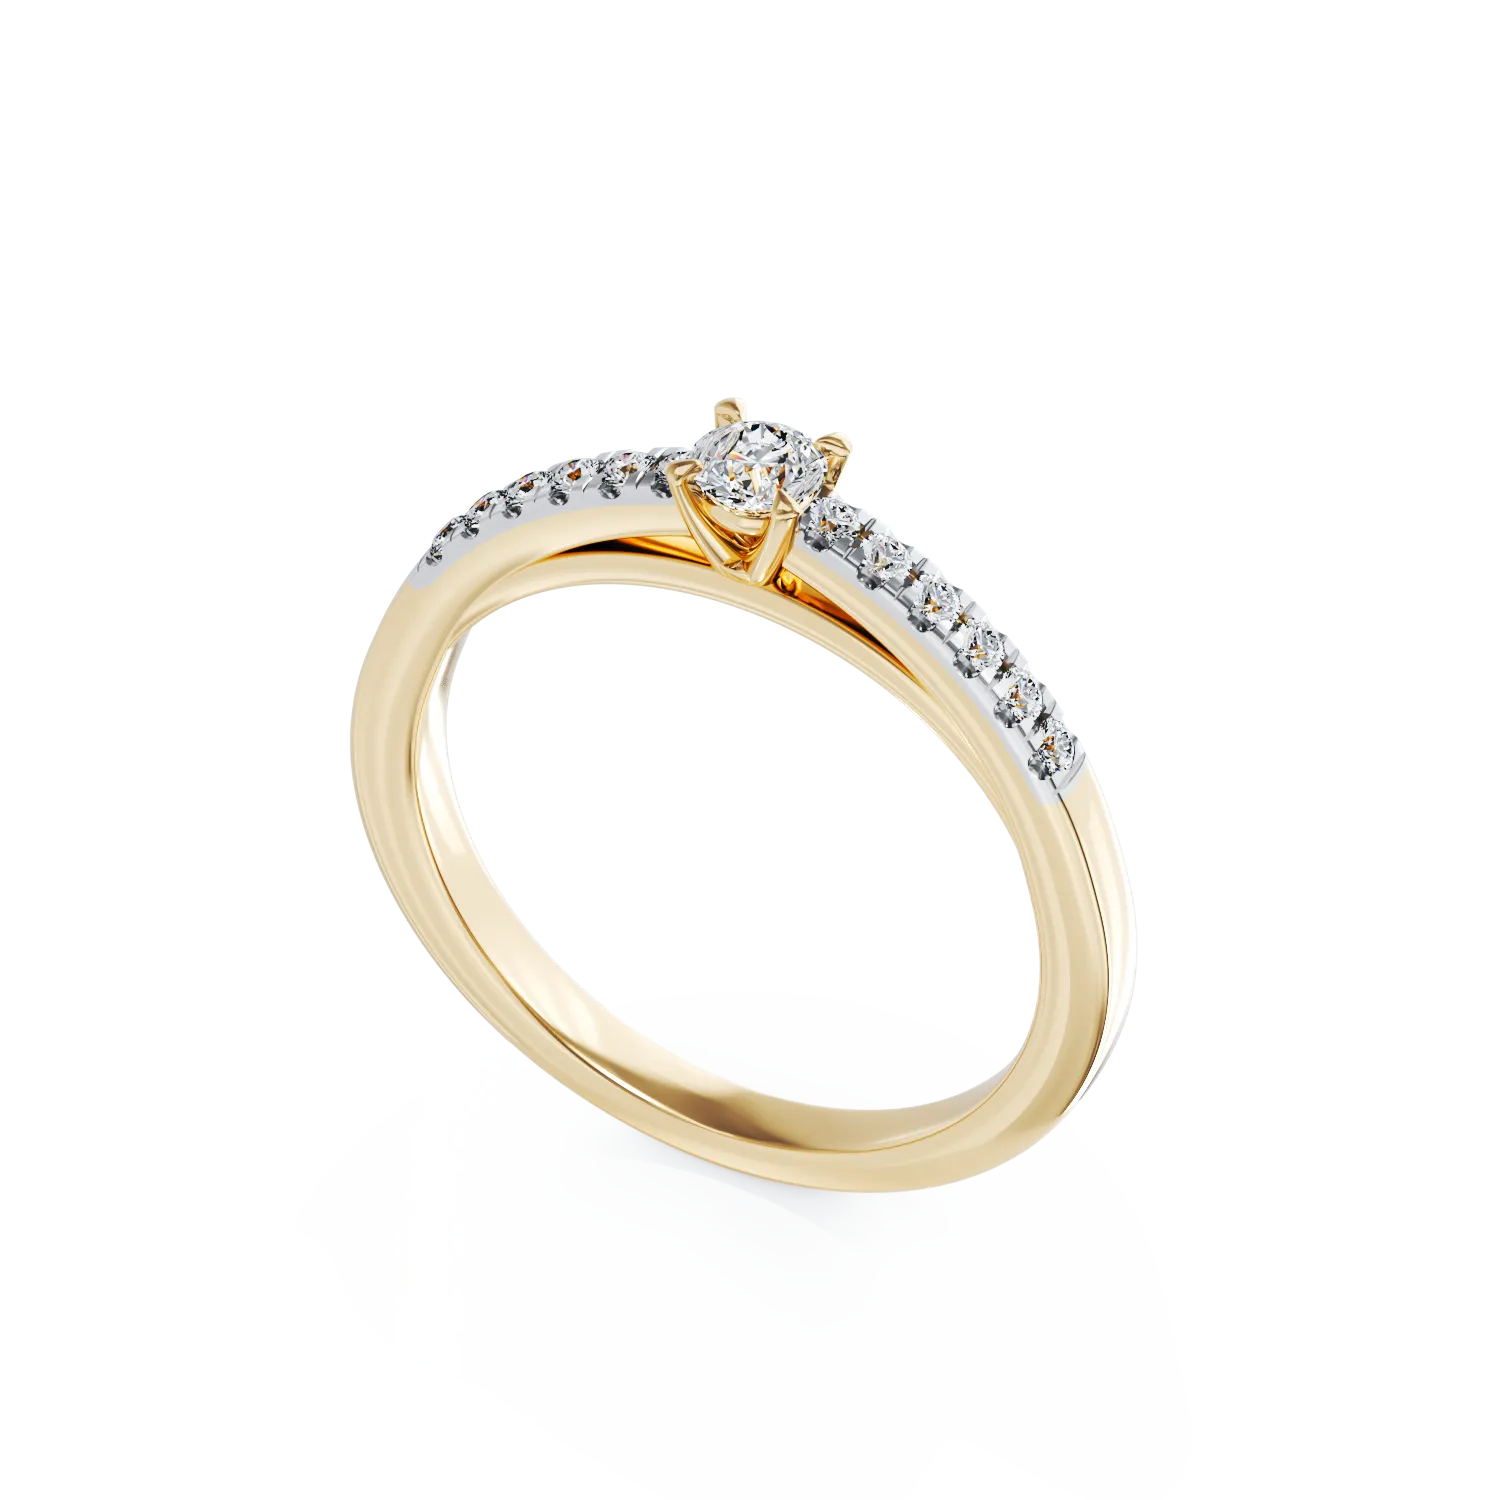 Eljegyzési gyűrű 18K-os sárga aranyból 0,24ct gyémánttal és 0,13ct gyémánttal. Gramm: 2,8